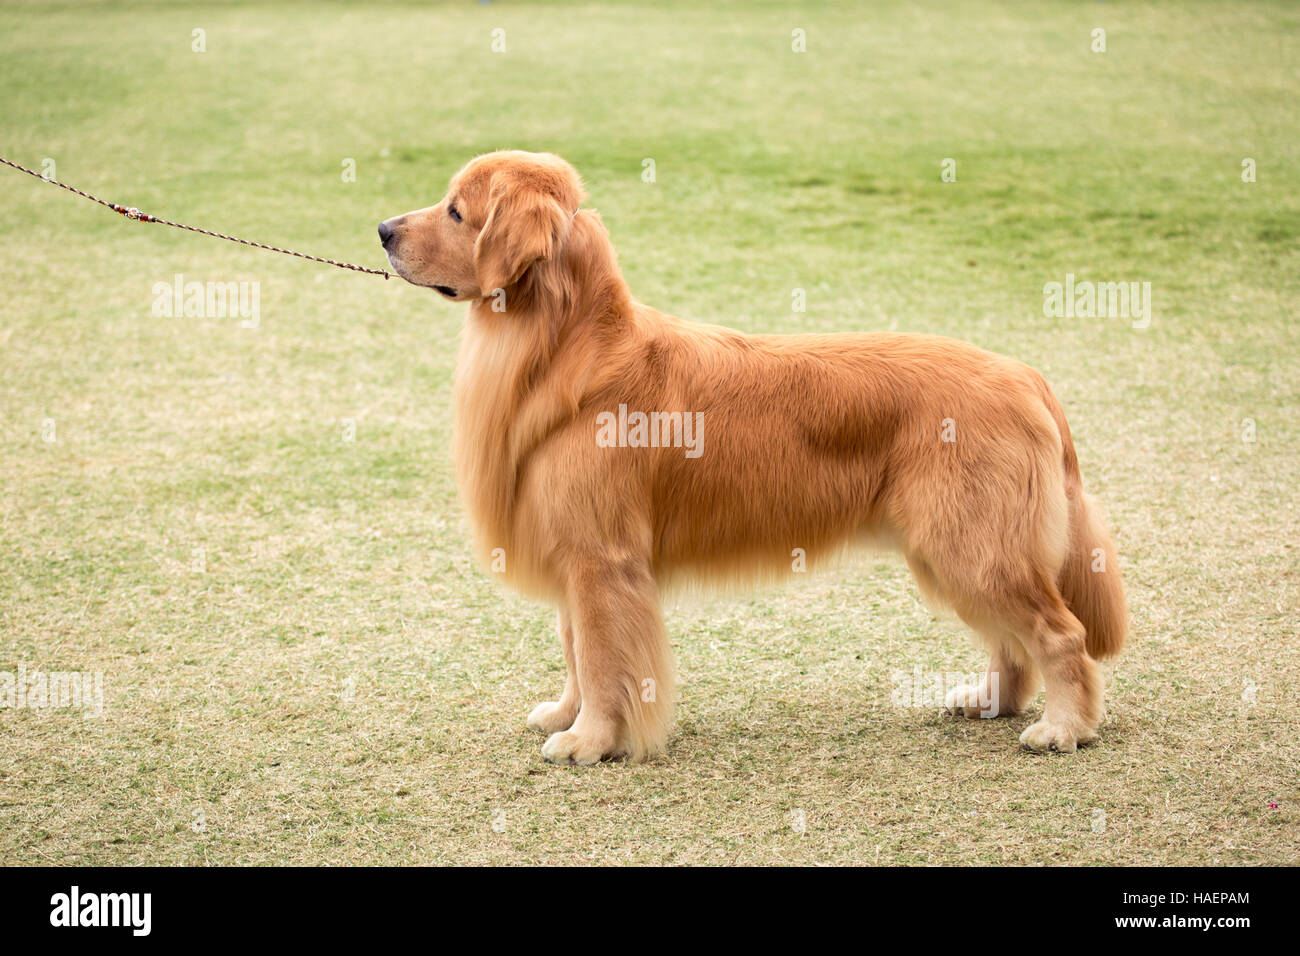 Golden Retriever de pie en un espectáculo de perros Foto de stock